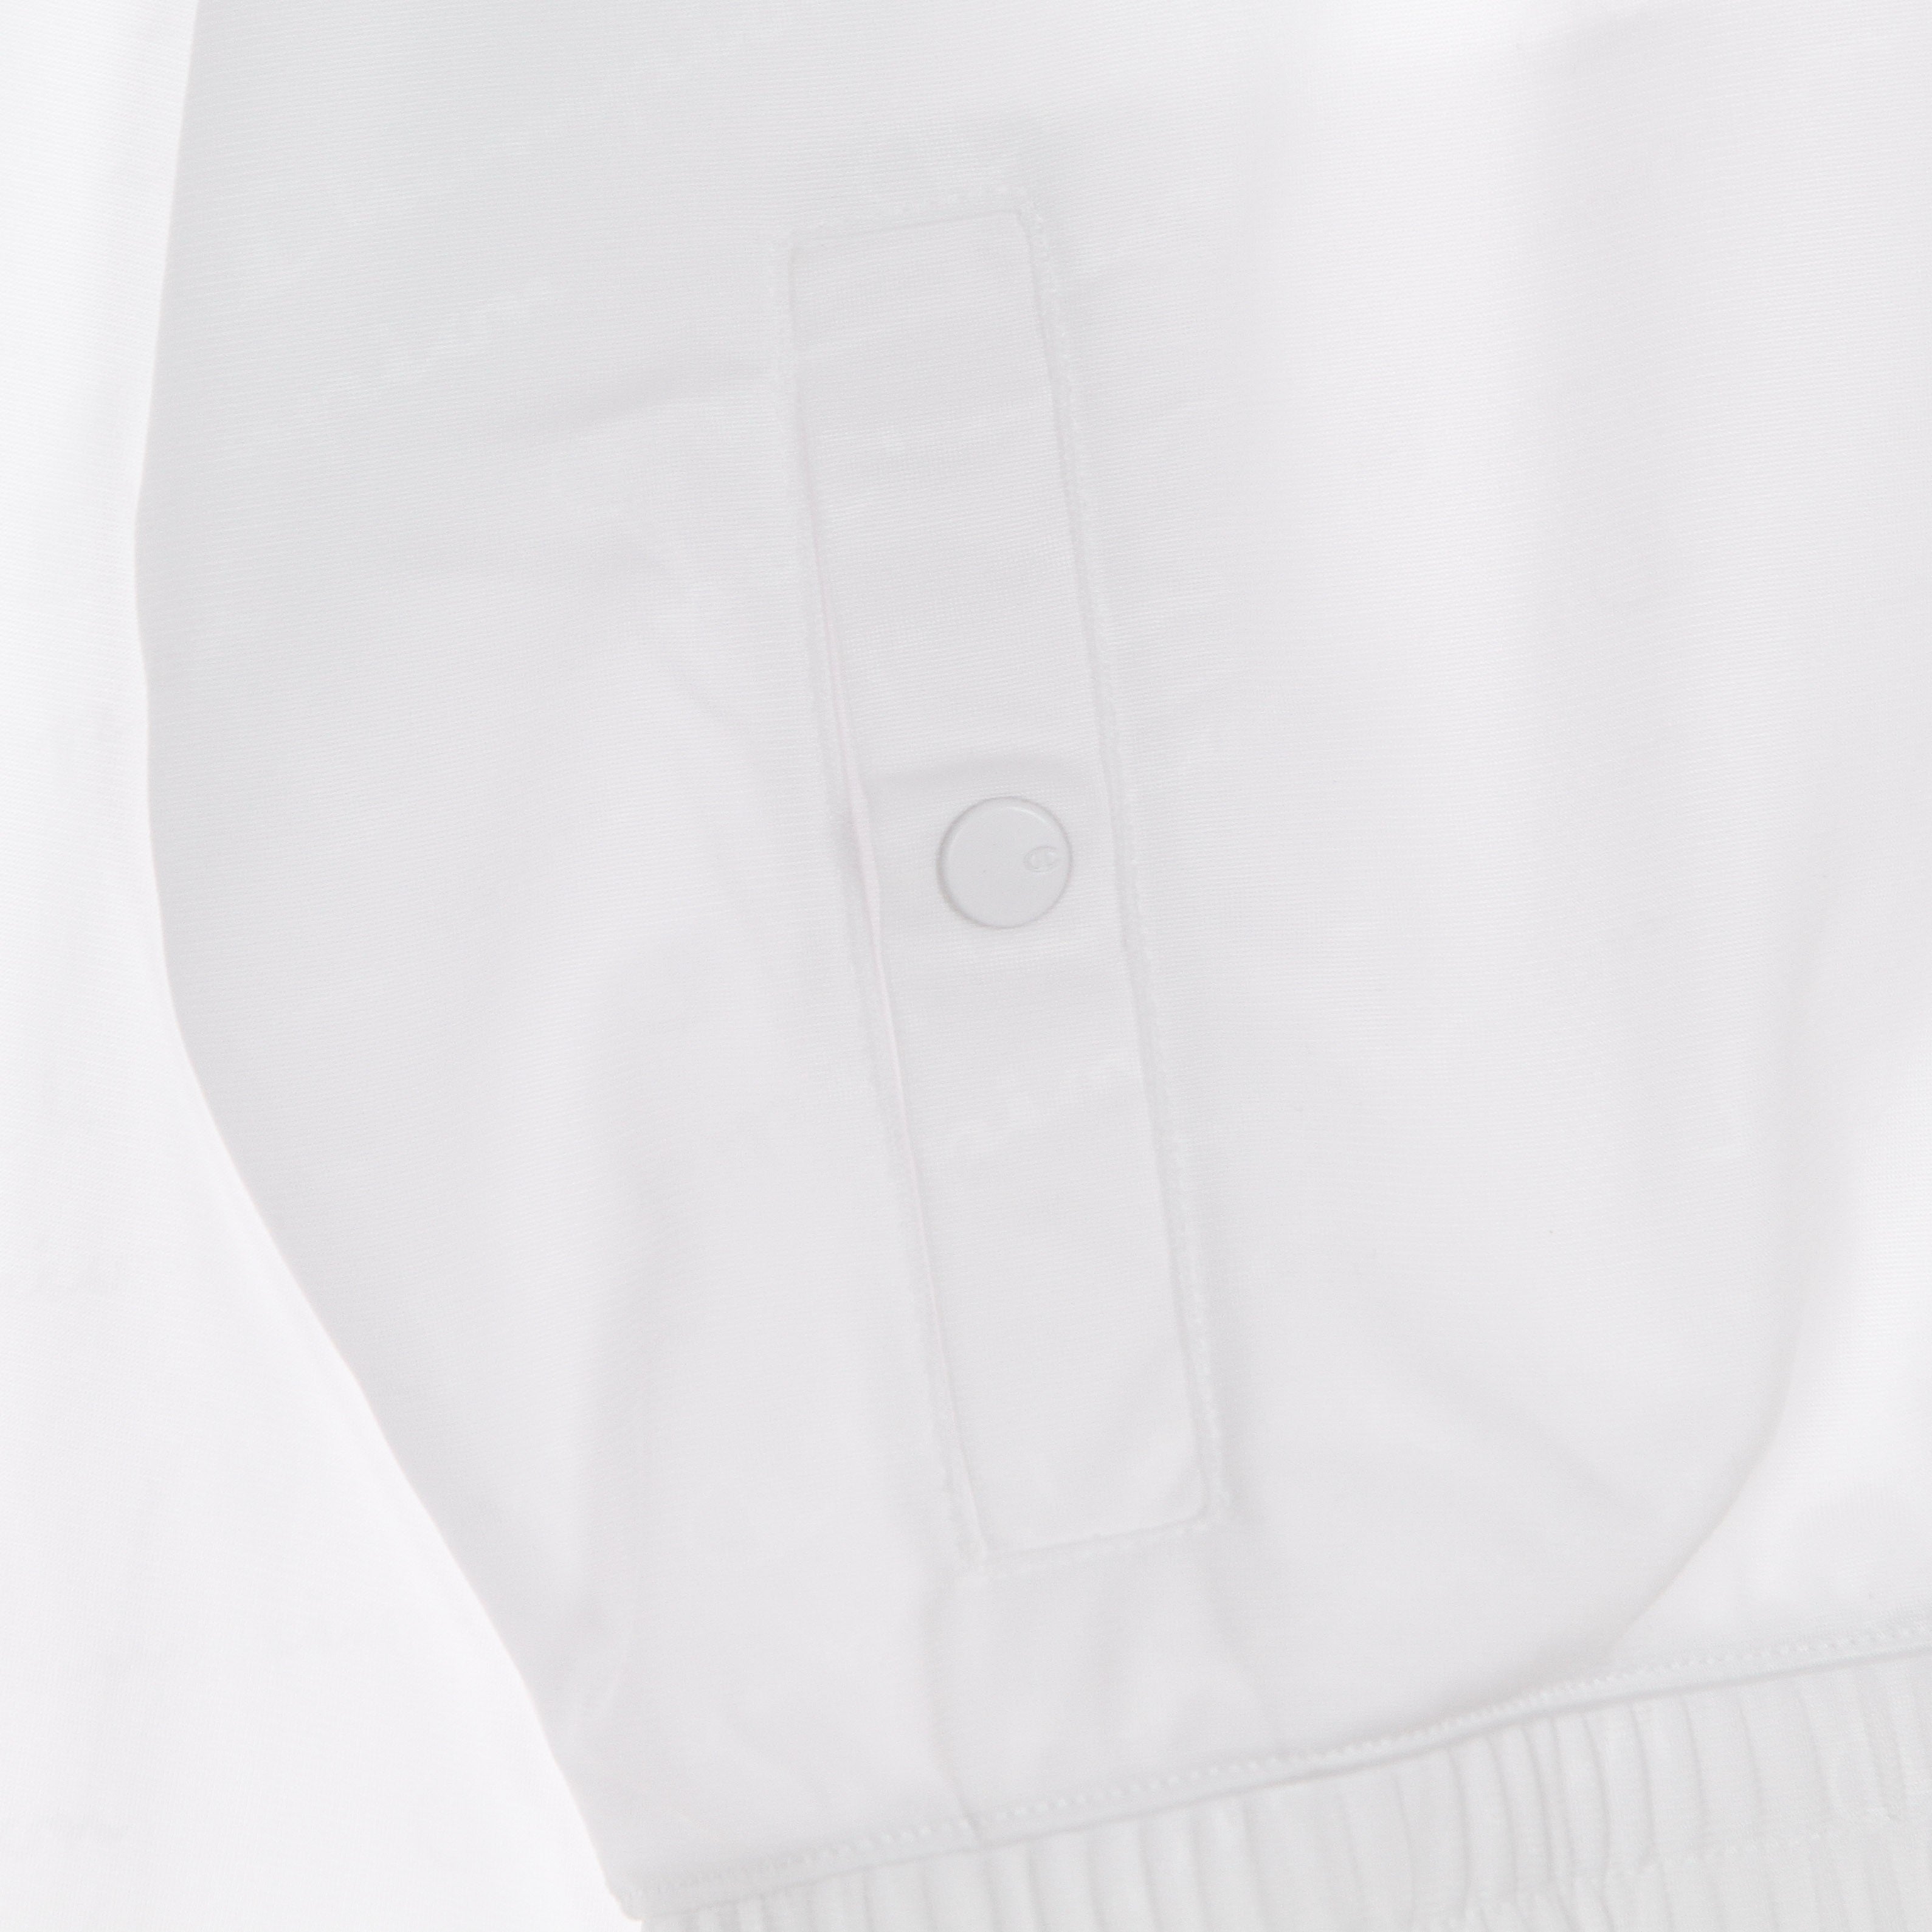 Women's Tracksuit Jacket Allover Logo Full Zip Sweatshirt White/allover